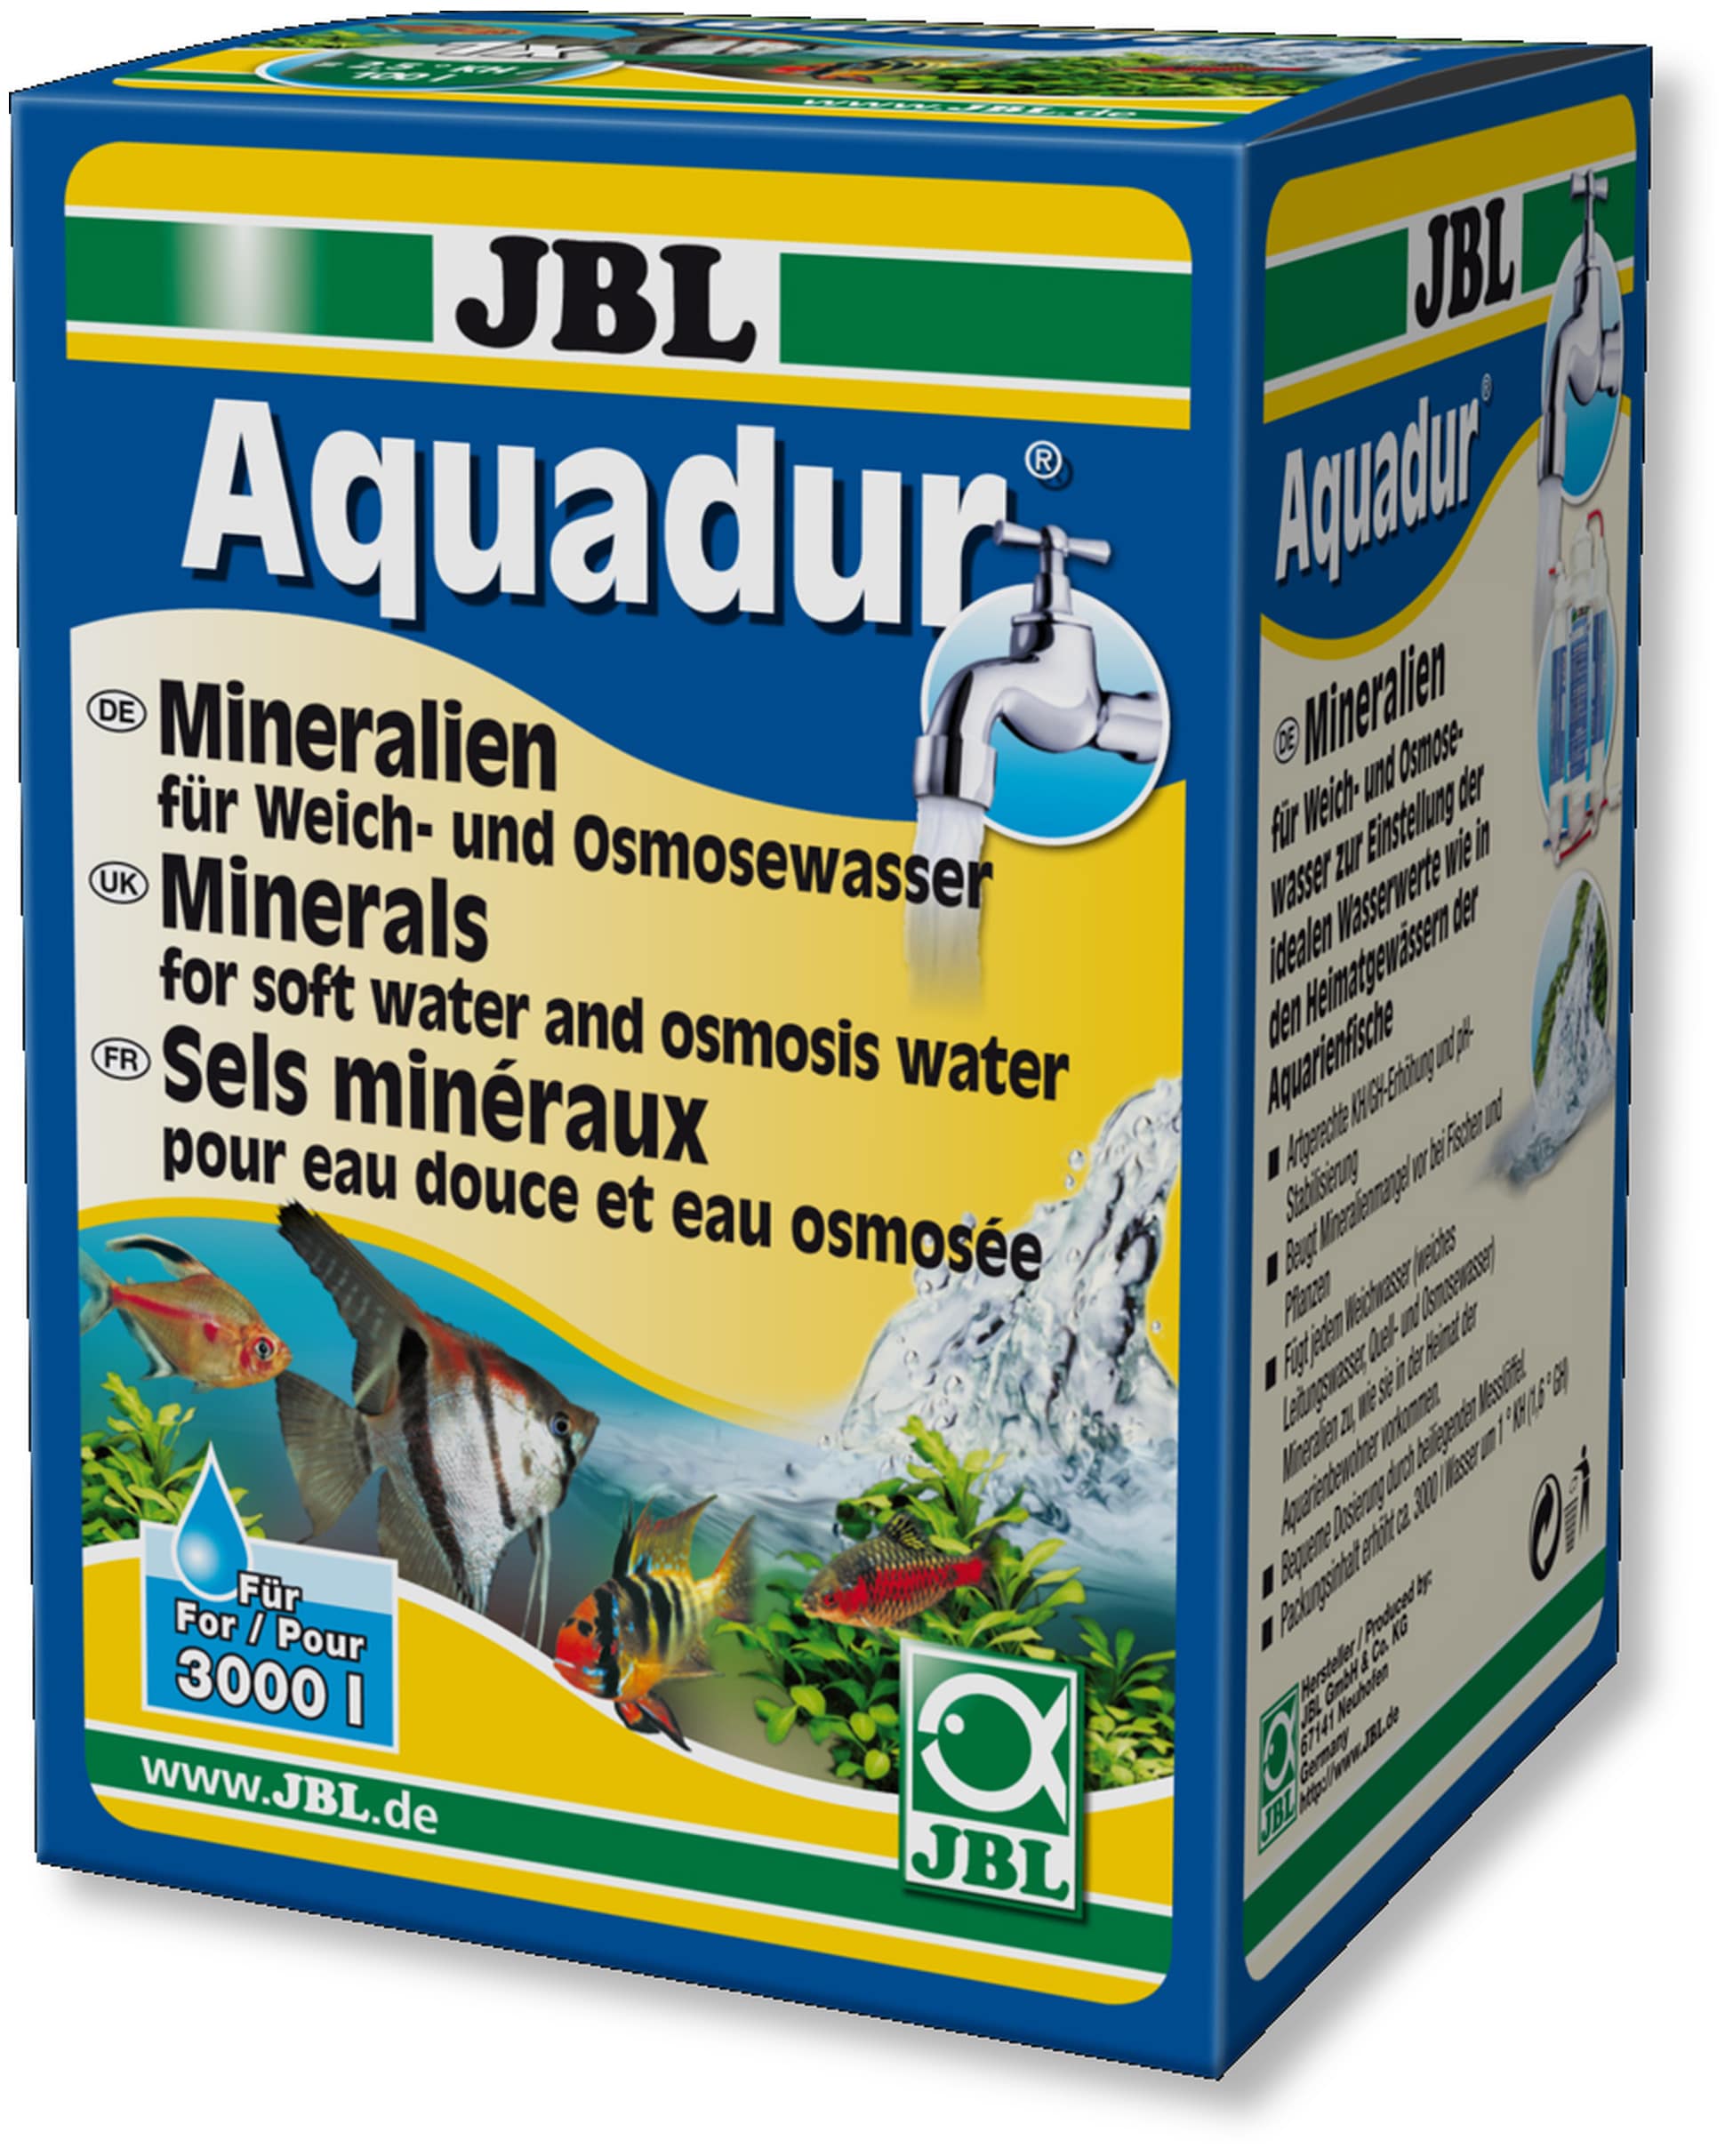 jbl-aquadur-plus-apporte-a-l-eau-douce-ou-a-l-eau-osmosee-plus-de-70-sels-differents-min